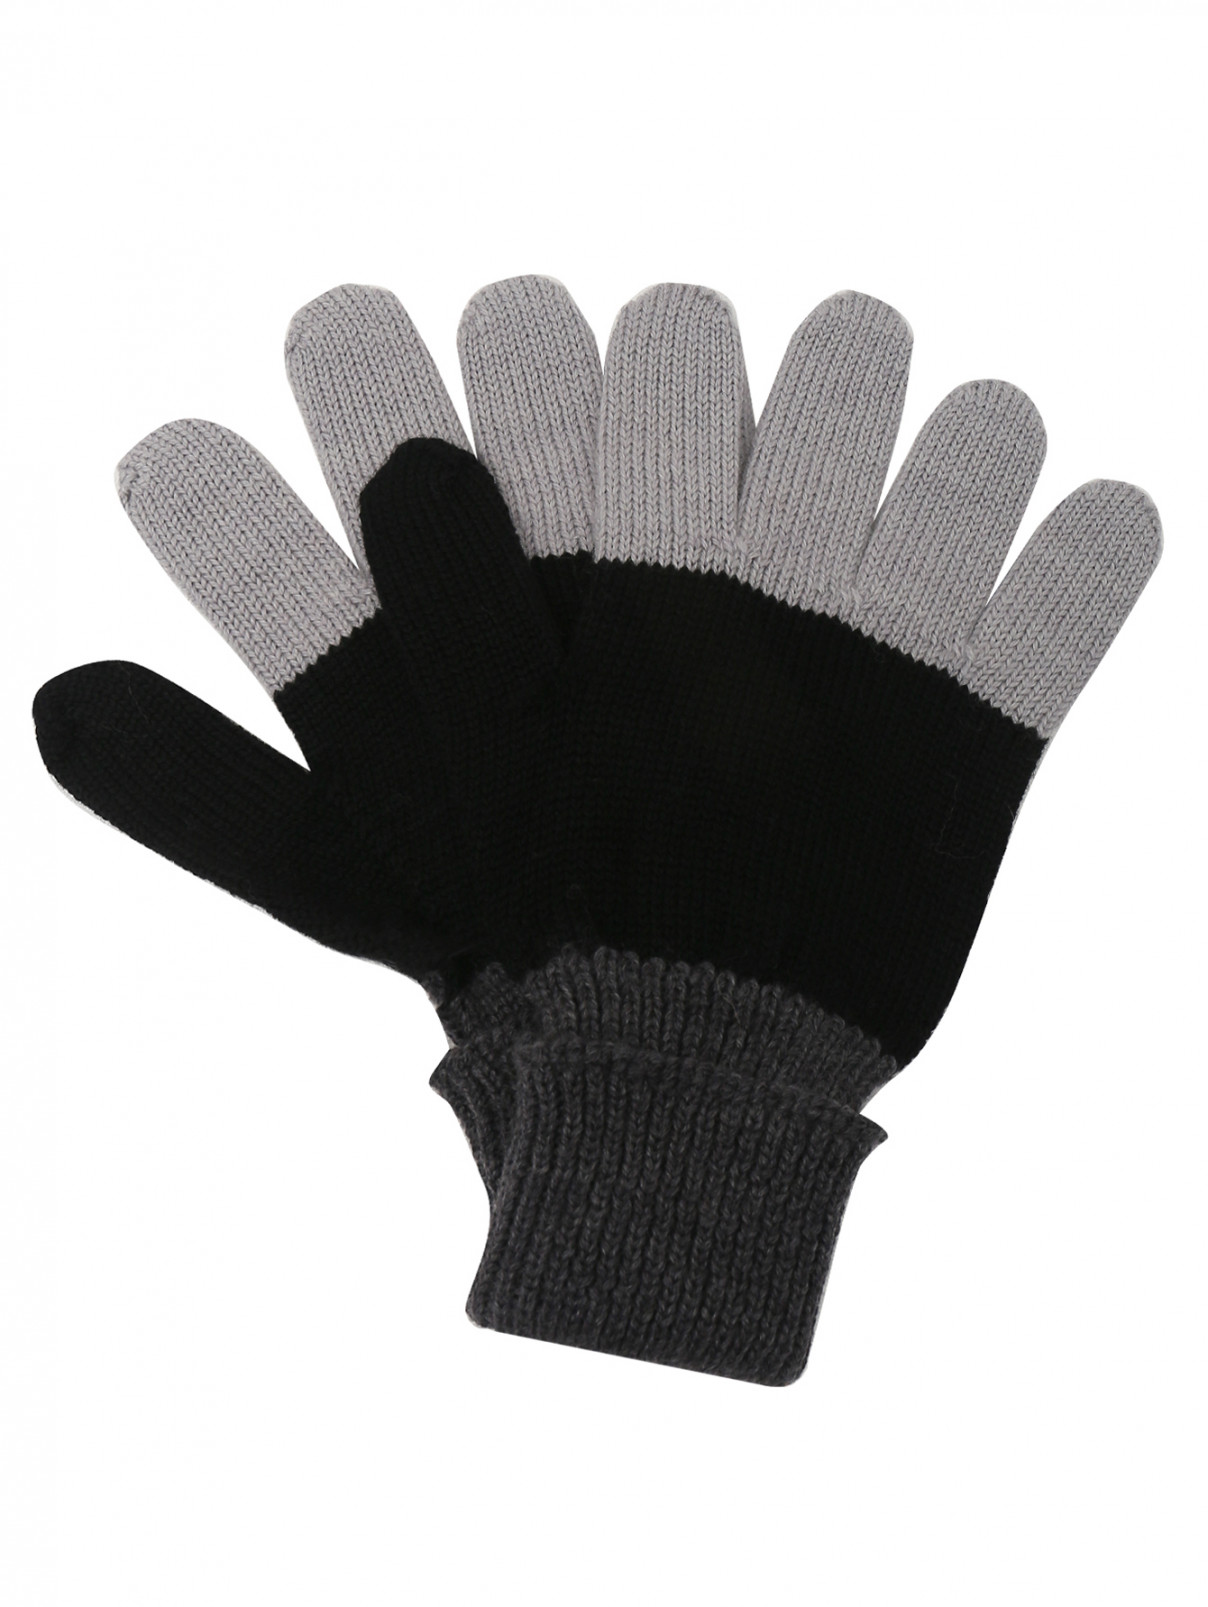 Трикотажные перчатки мелкой вязки IL Trenino  –  Общий вид  – Цвет:  Серый